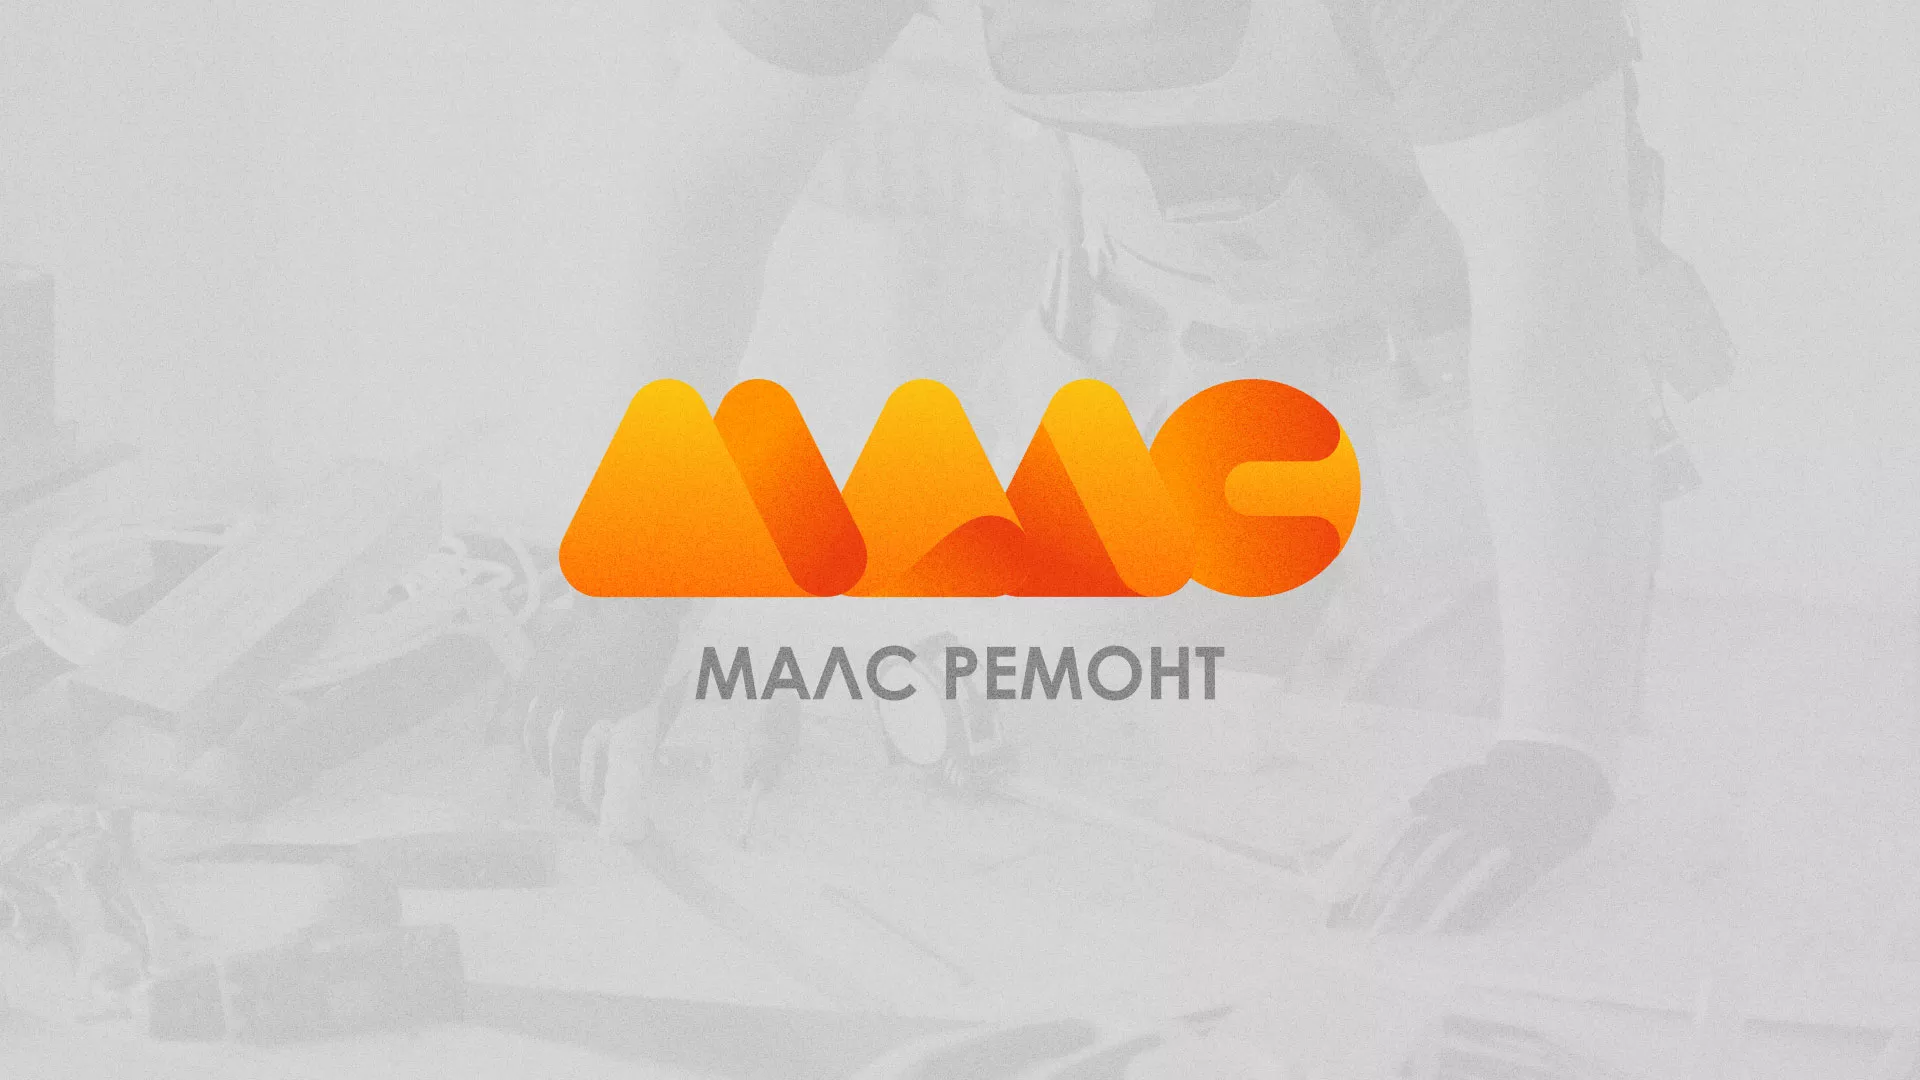 Создание логотипа для компании «МАЛС РЕМОНТ» в Омутнинске